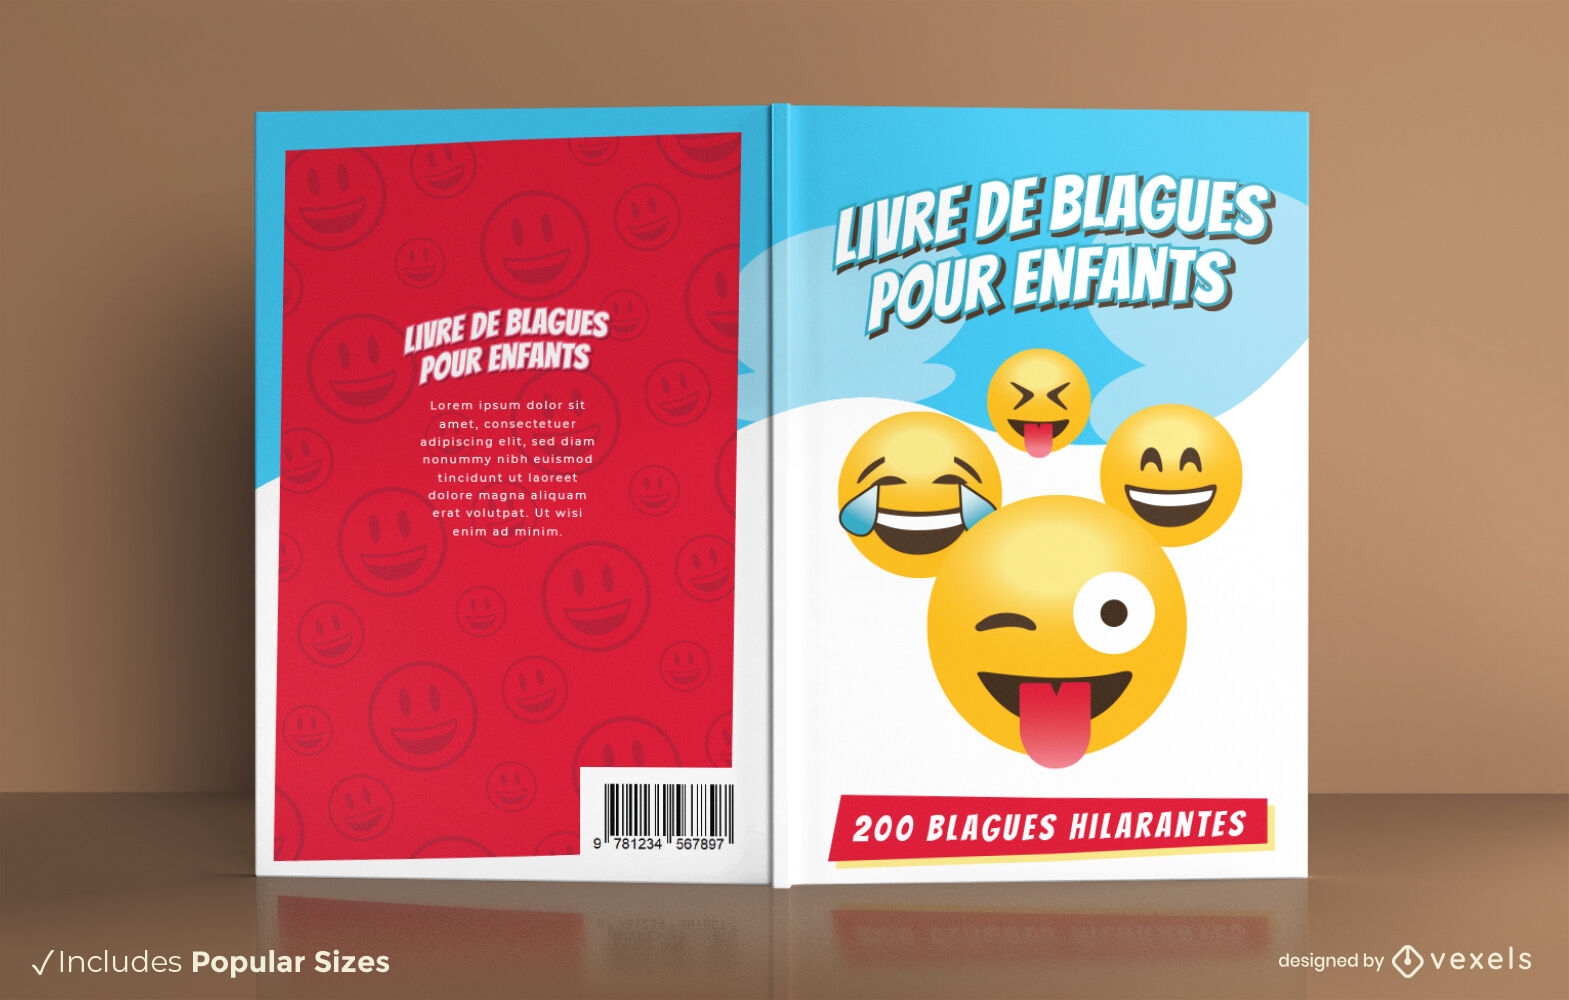 Lustiges Emoji-Gesichter-Witz-Buch-Cover-Design